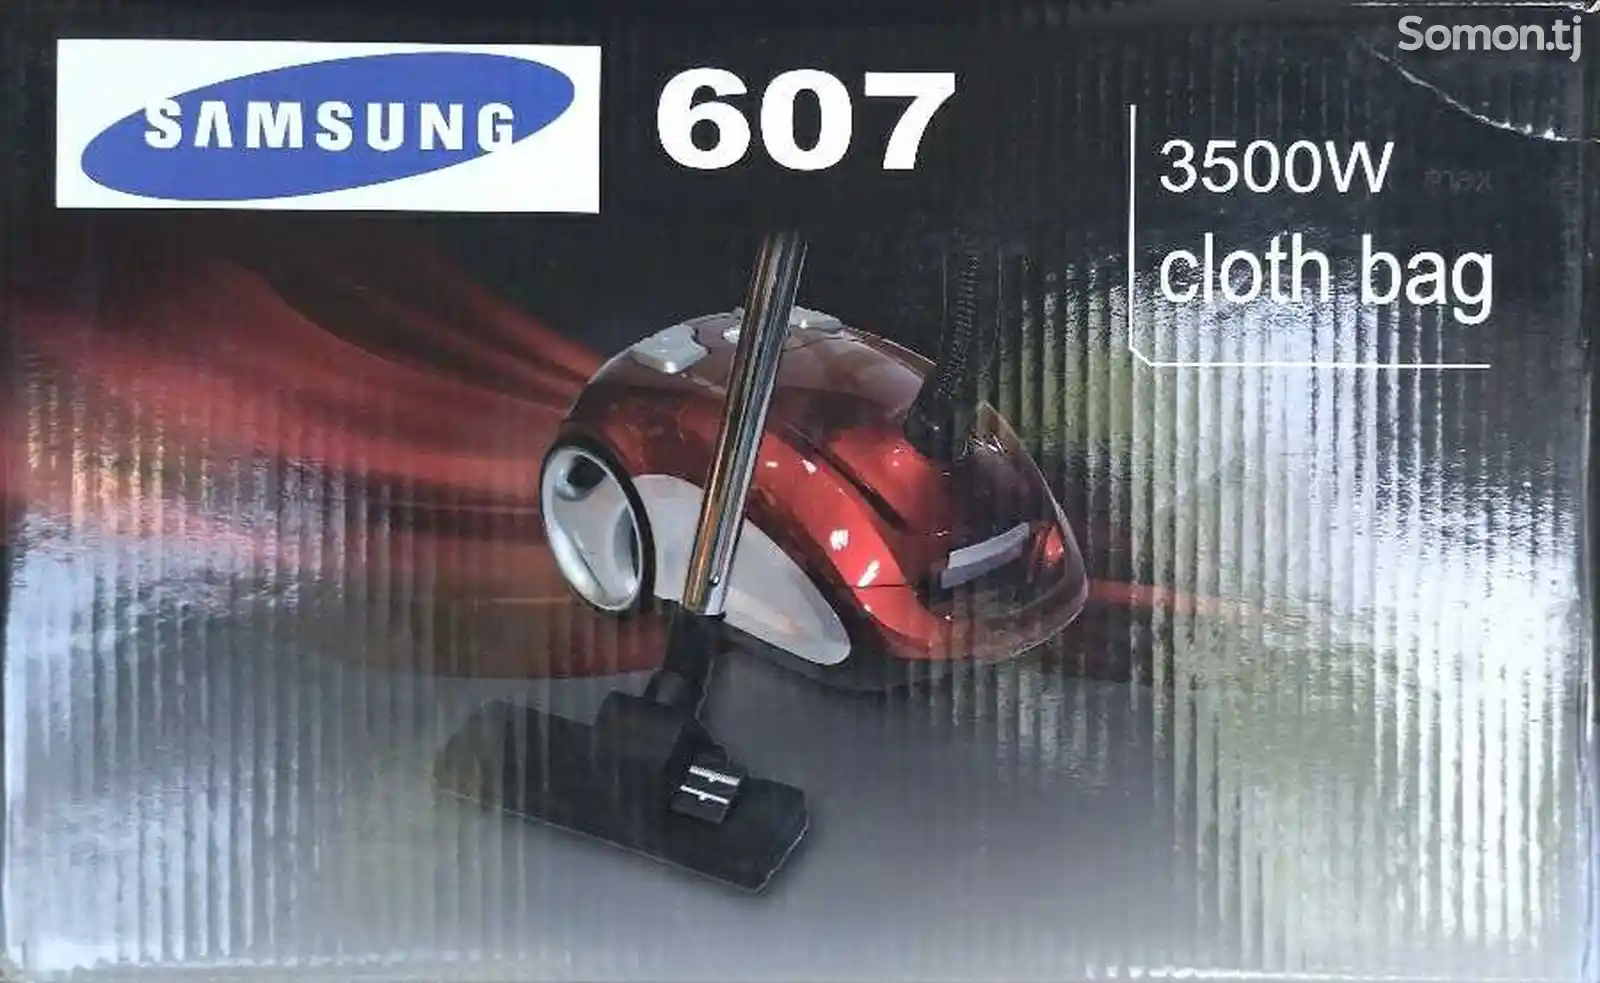 Пылесос Samsung 607